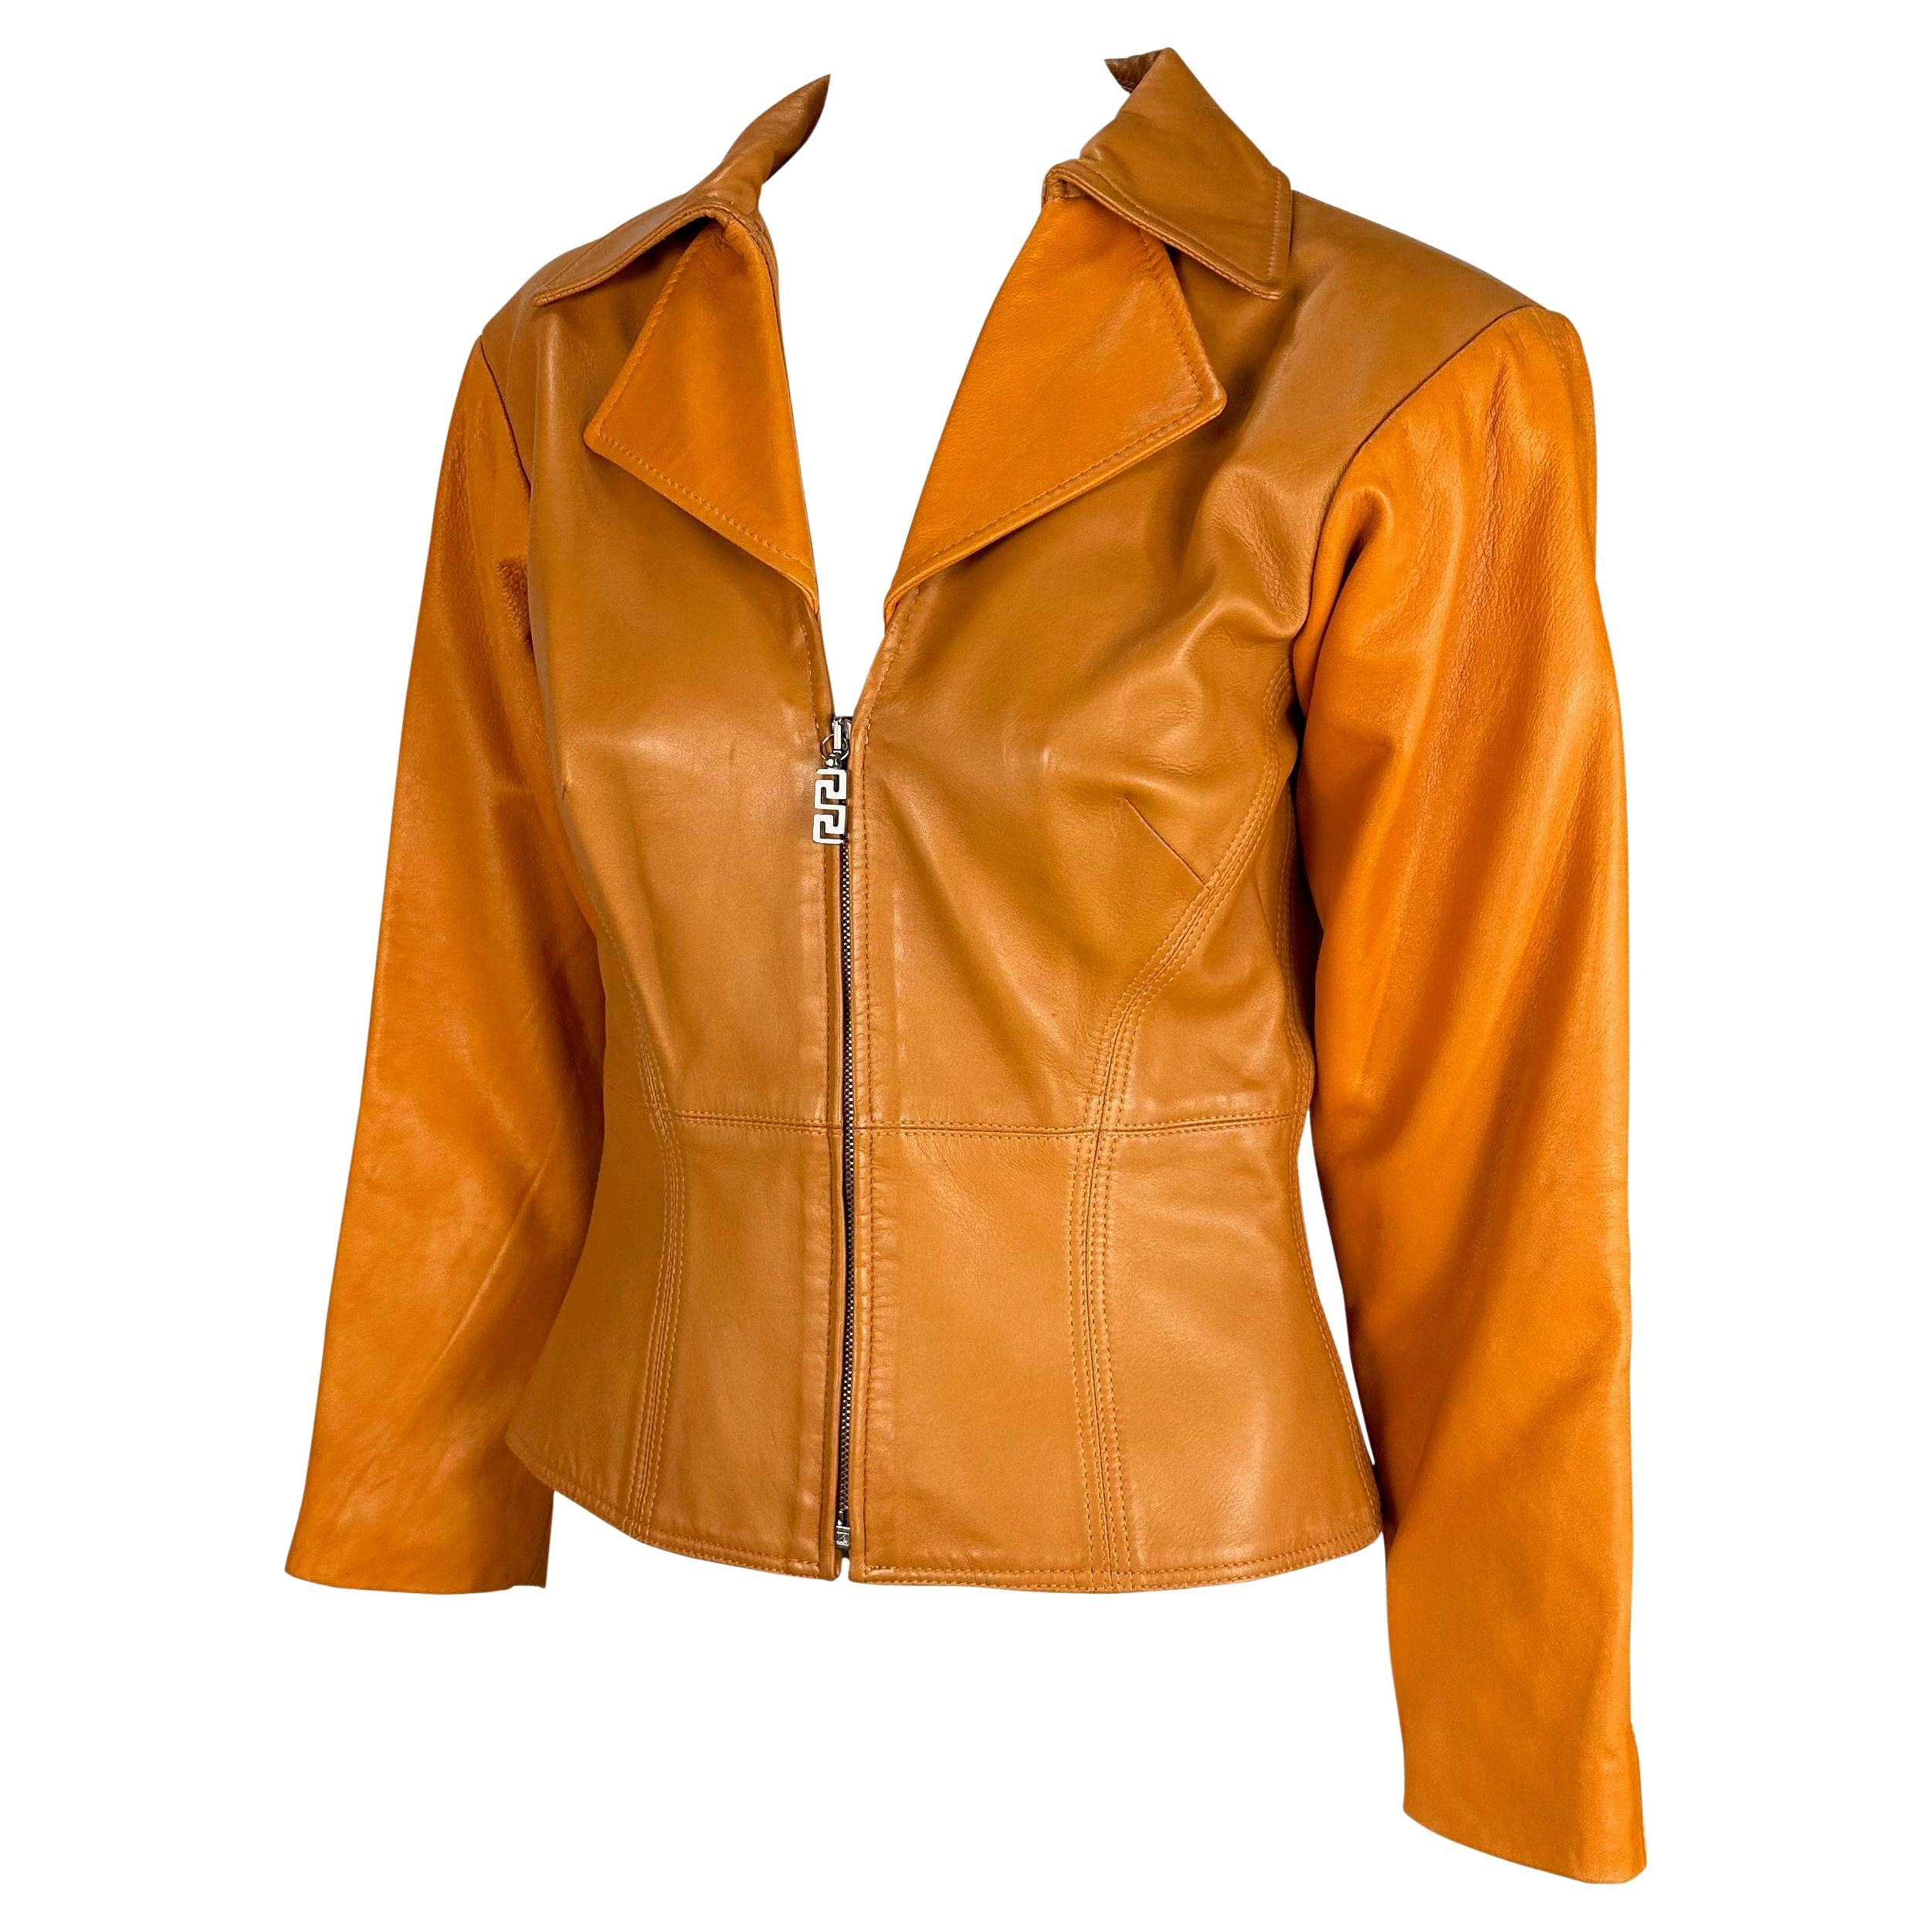 Wir präsentieren eine wunderschöne orangefarbene Lederjacke von Gianni Versace Couture, entworfen von Donatella Versace. Dieses einzigartige Stück hat einen Kragen, einen tiefen Ausschnitt und einen halben Reißverschluss. Diese von Donatella Versace